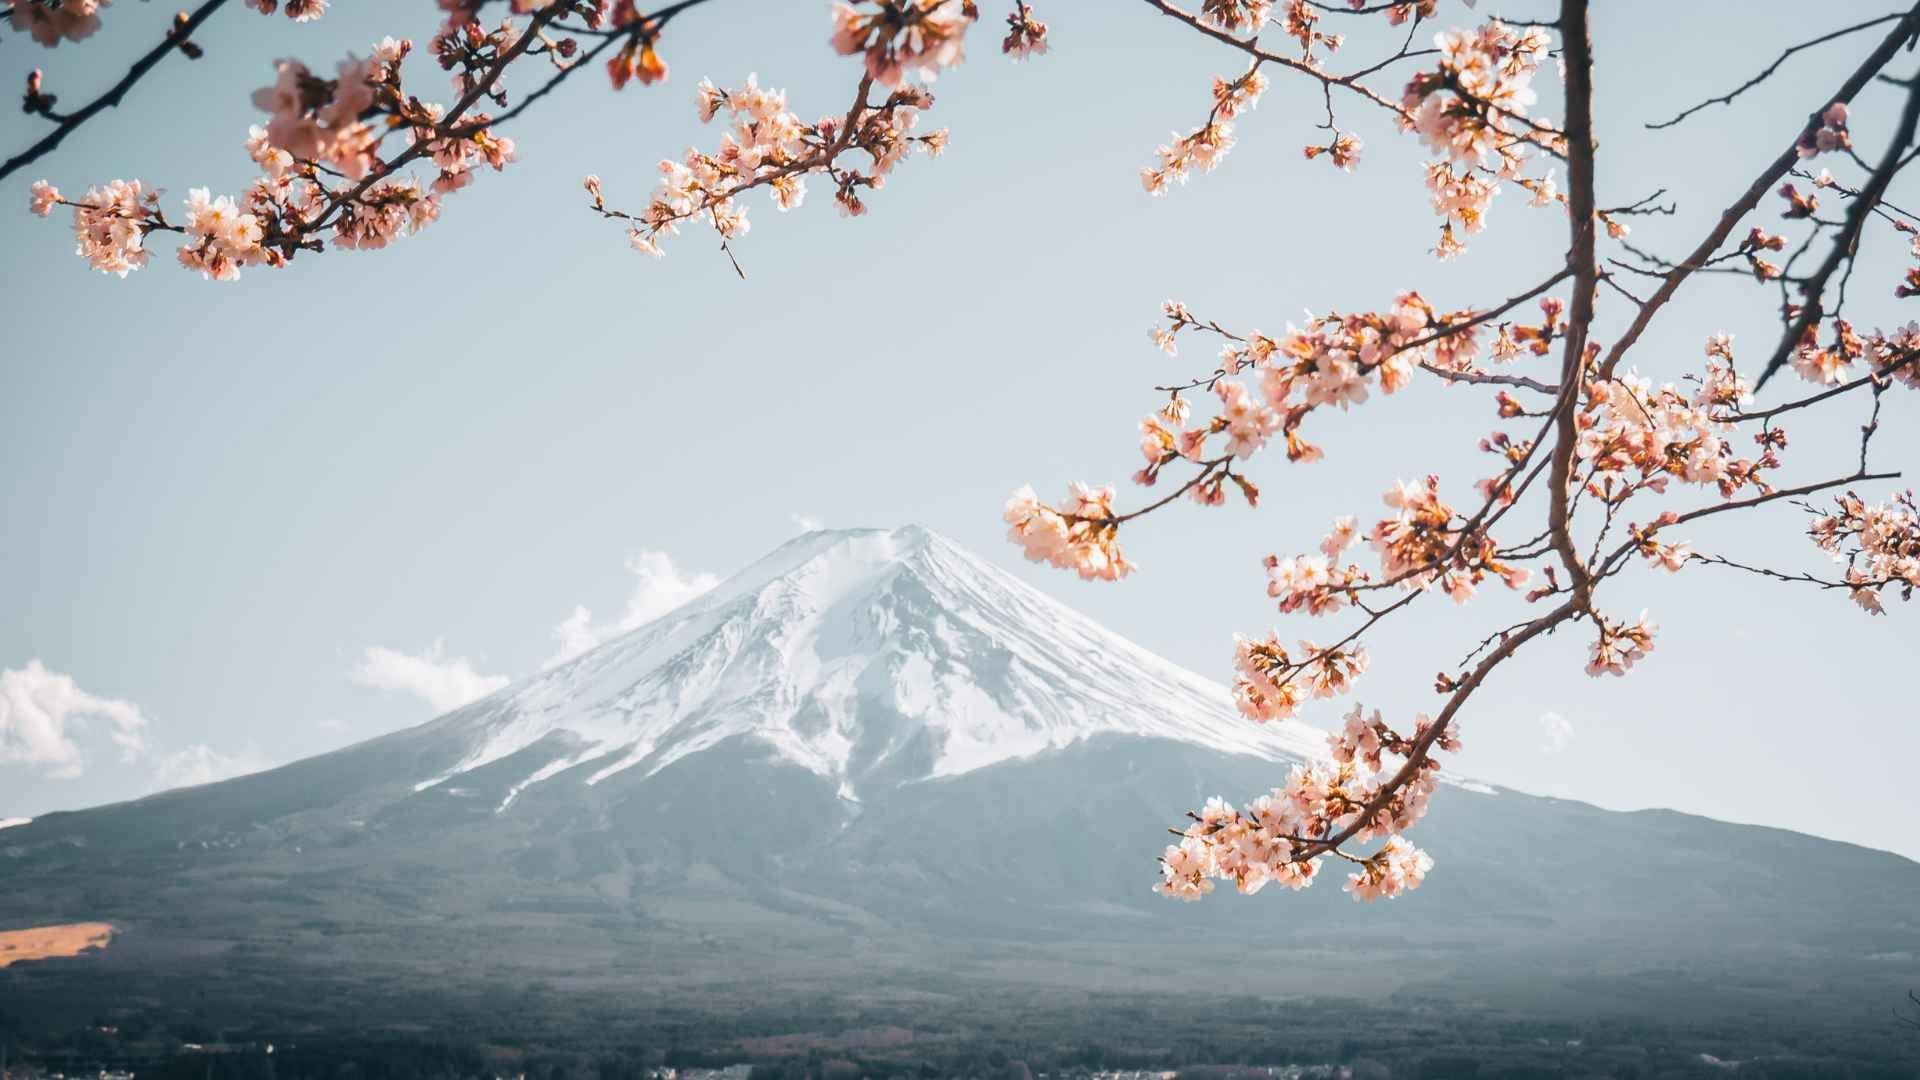 Image of Mount Fuji, Japan